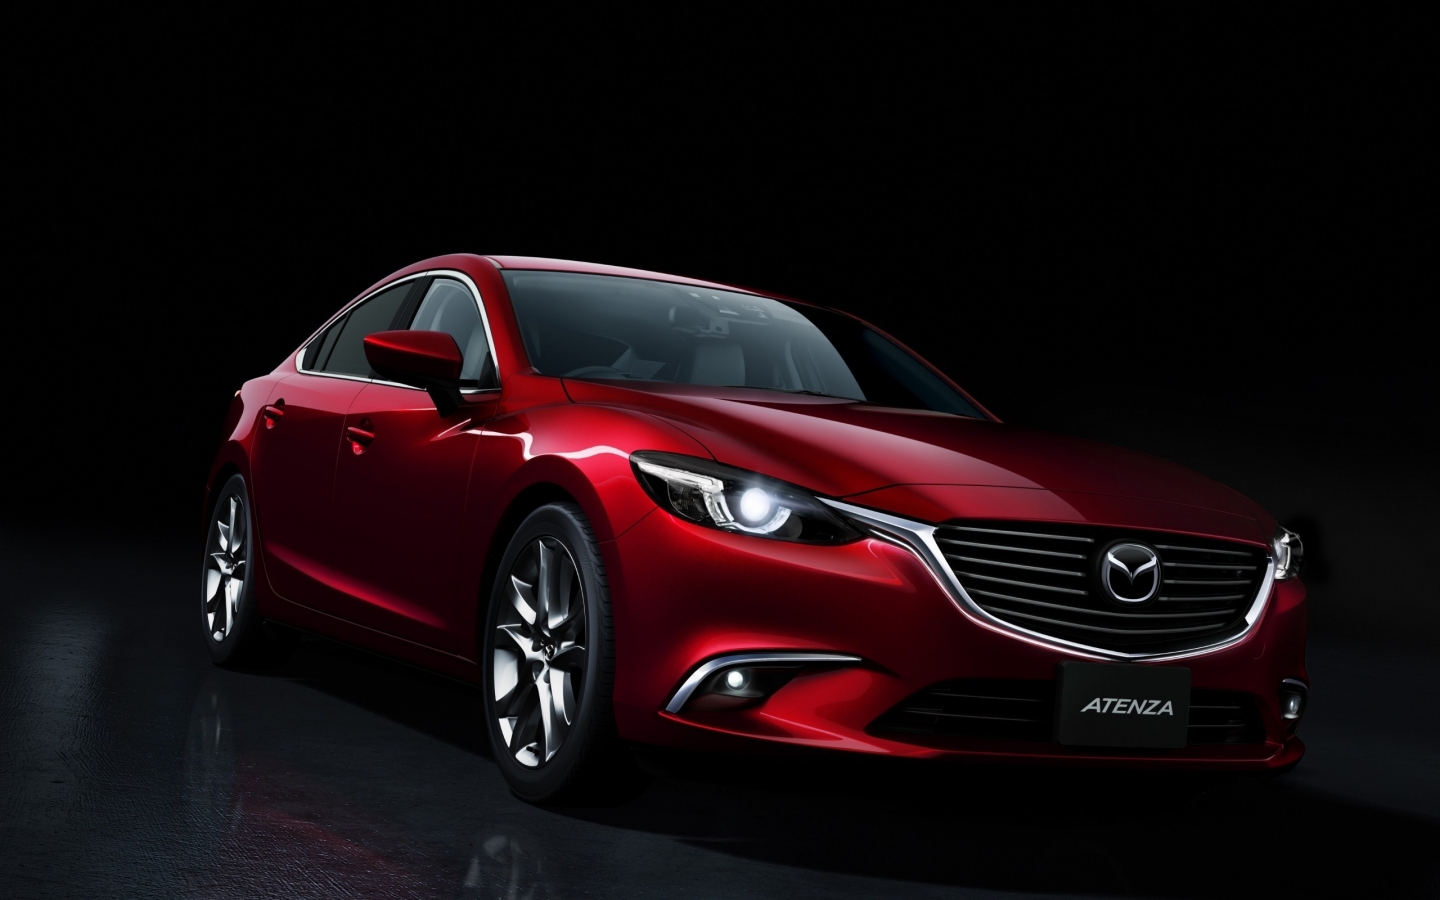 Mazda Atenza for 1440 x 900 widescreen resolution